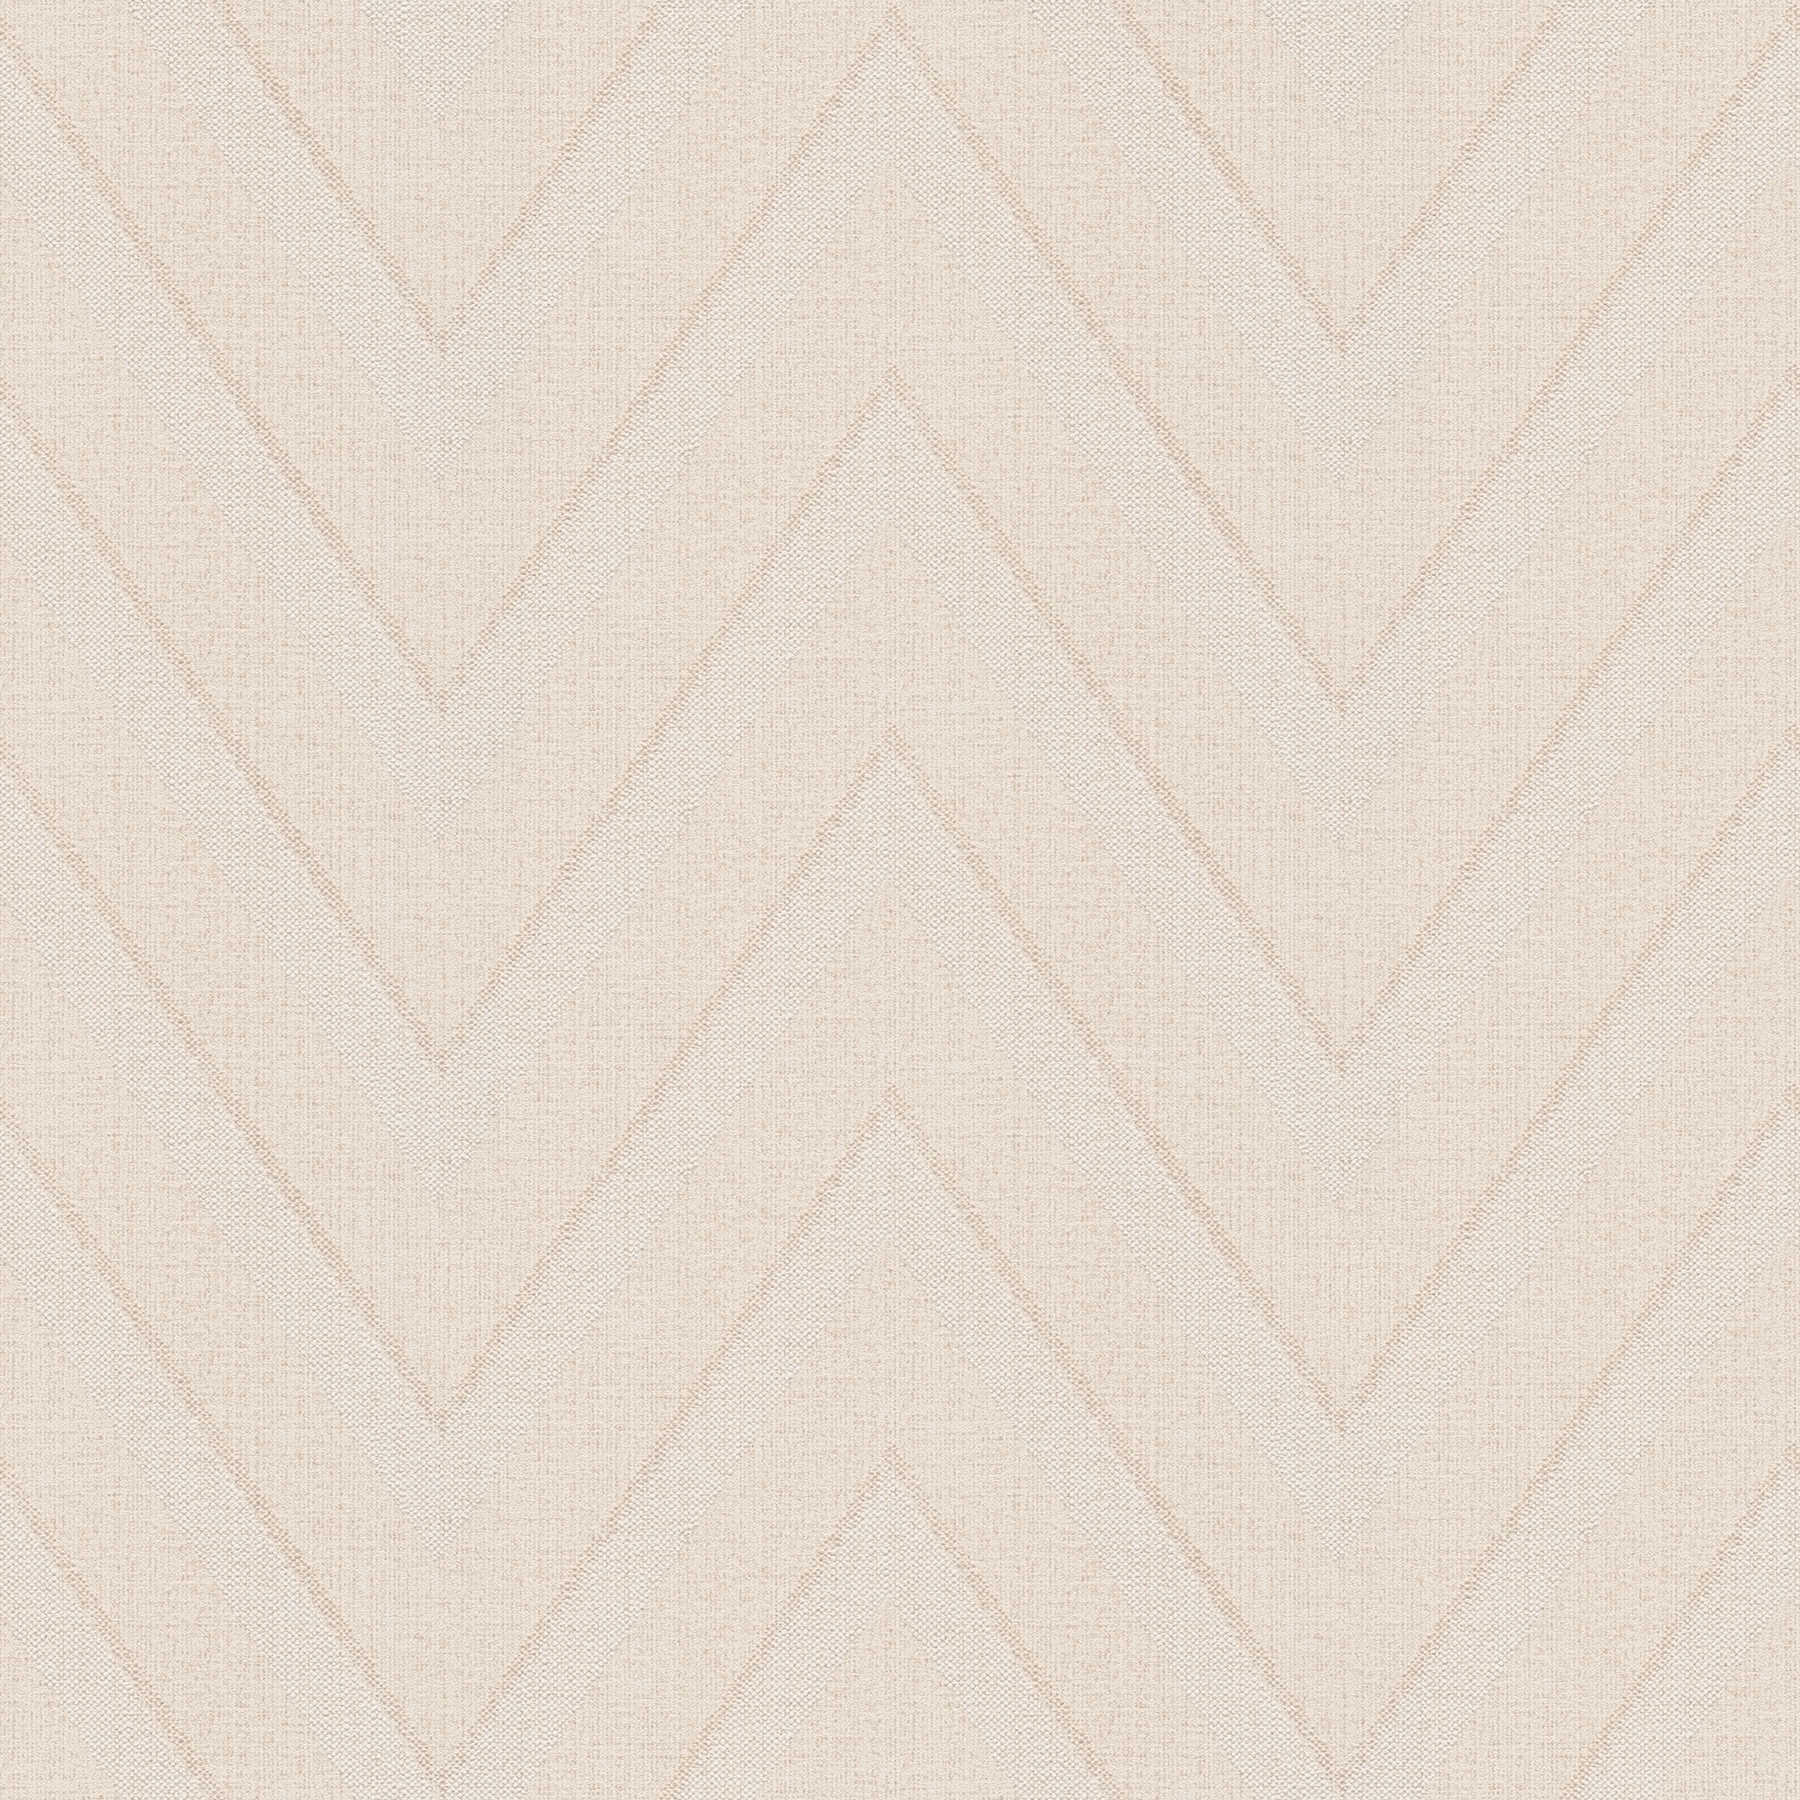         Papier peint zigzag & aspect lin - beige, marron
    